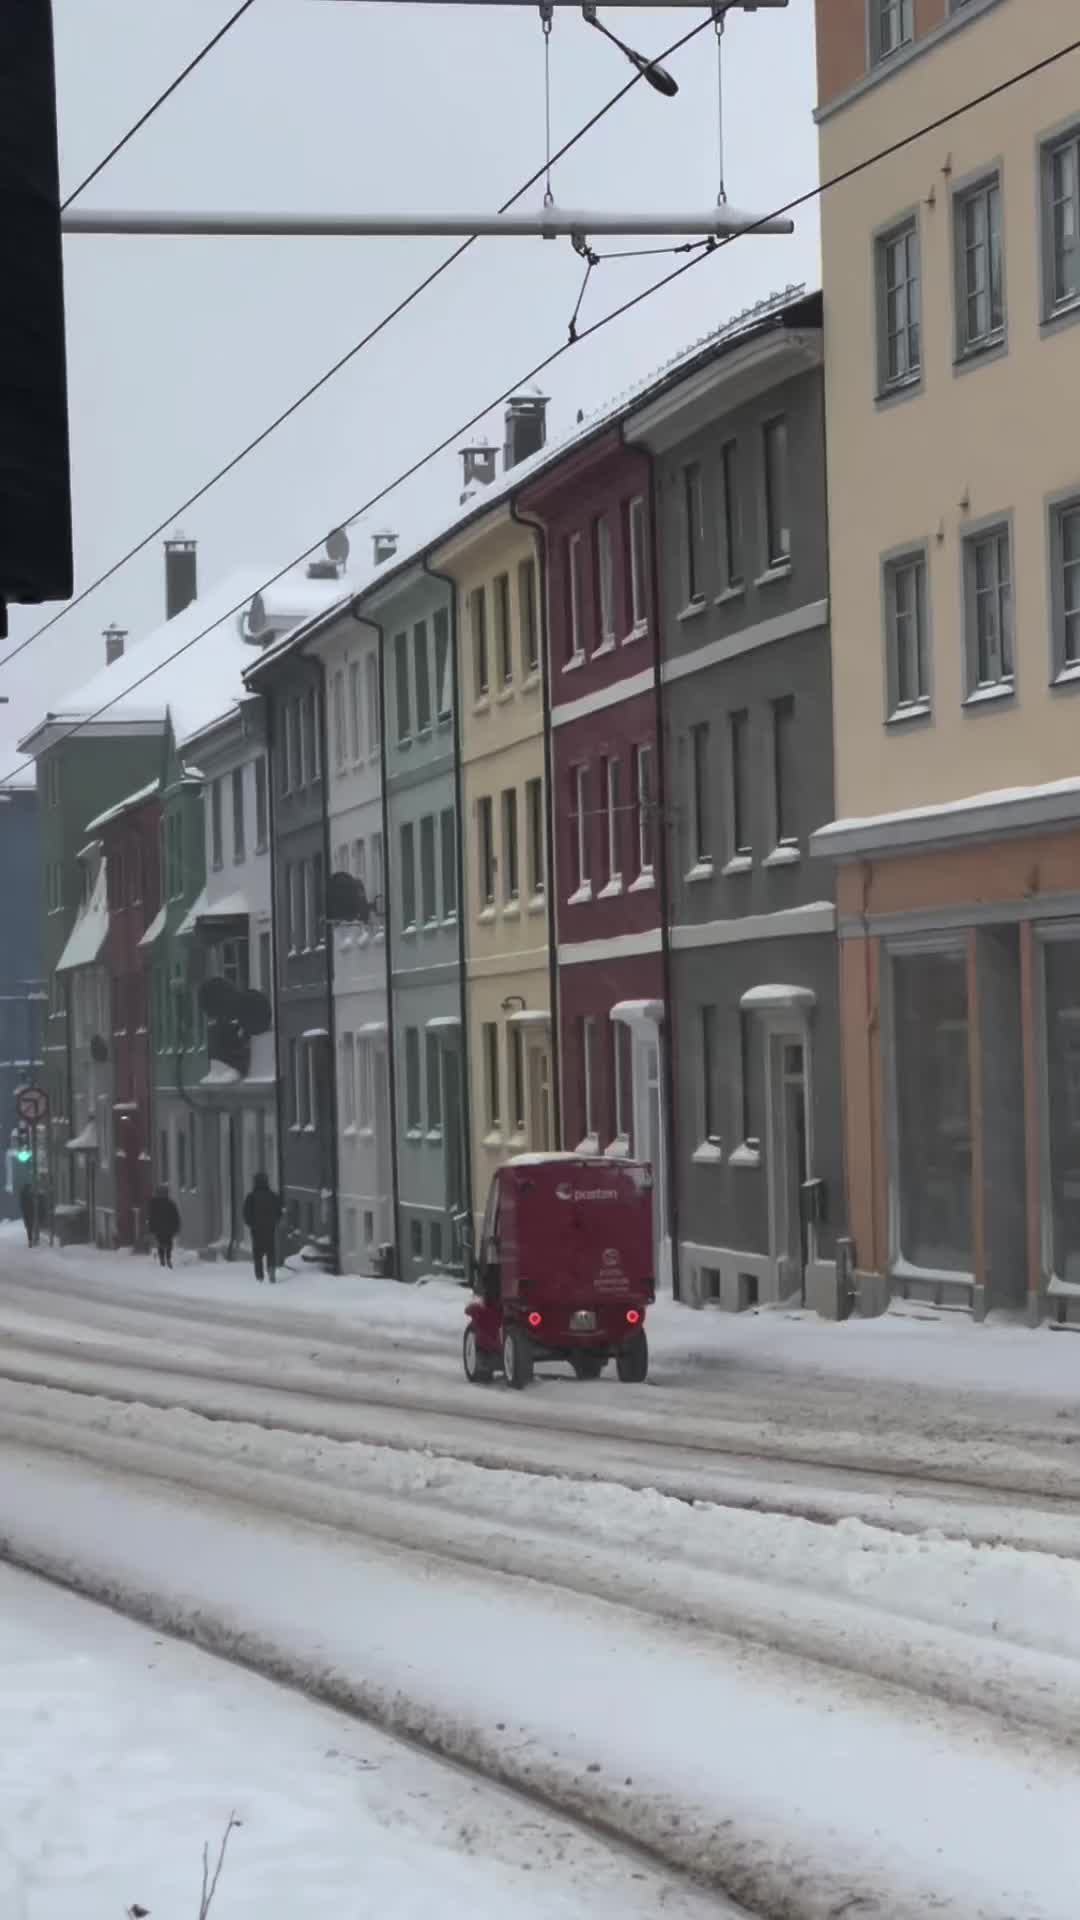 Winter Bliss in Bergen: Feed Your Soul ❄️